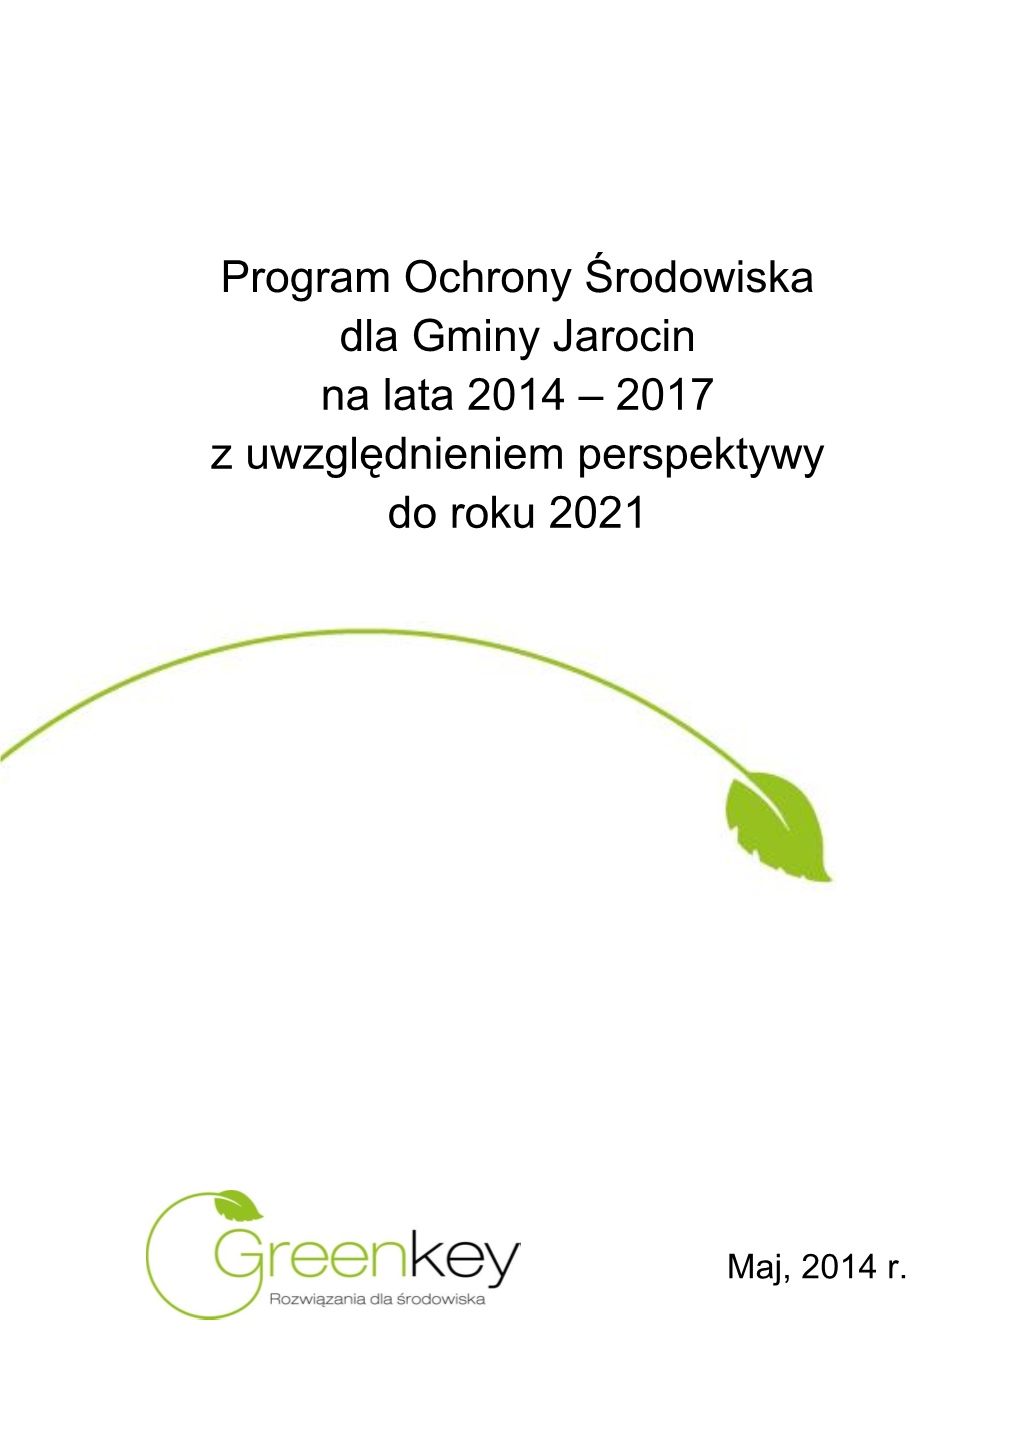 Program Ochrony Środowiska Dla Gminy Jarocin Na Lata 2014 – 2017 Z Uwzględnieniem Perspektywy Do Roku 2021